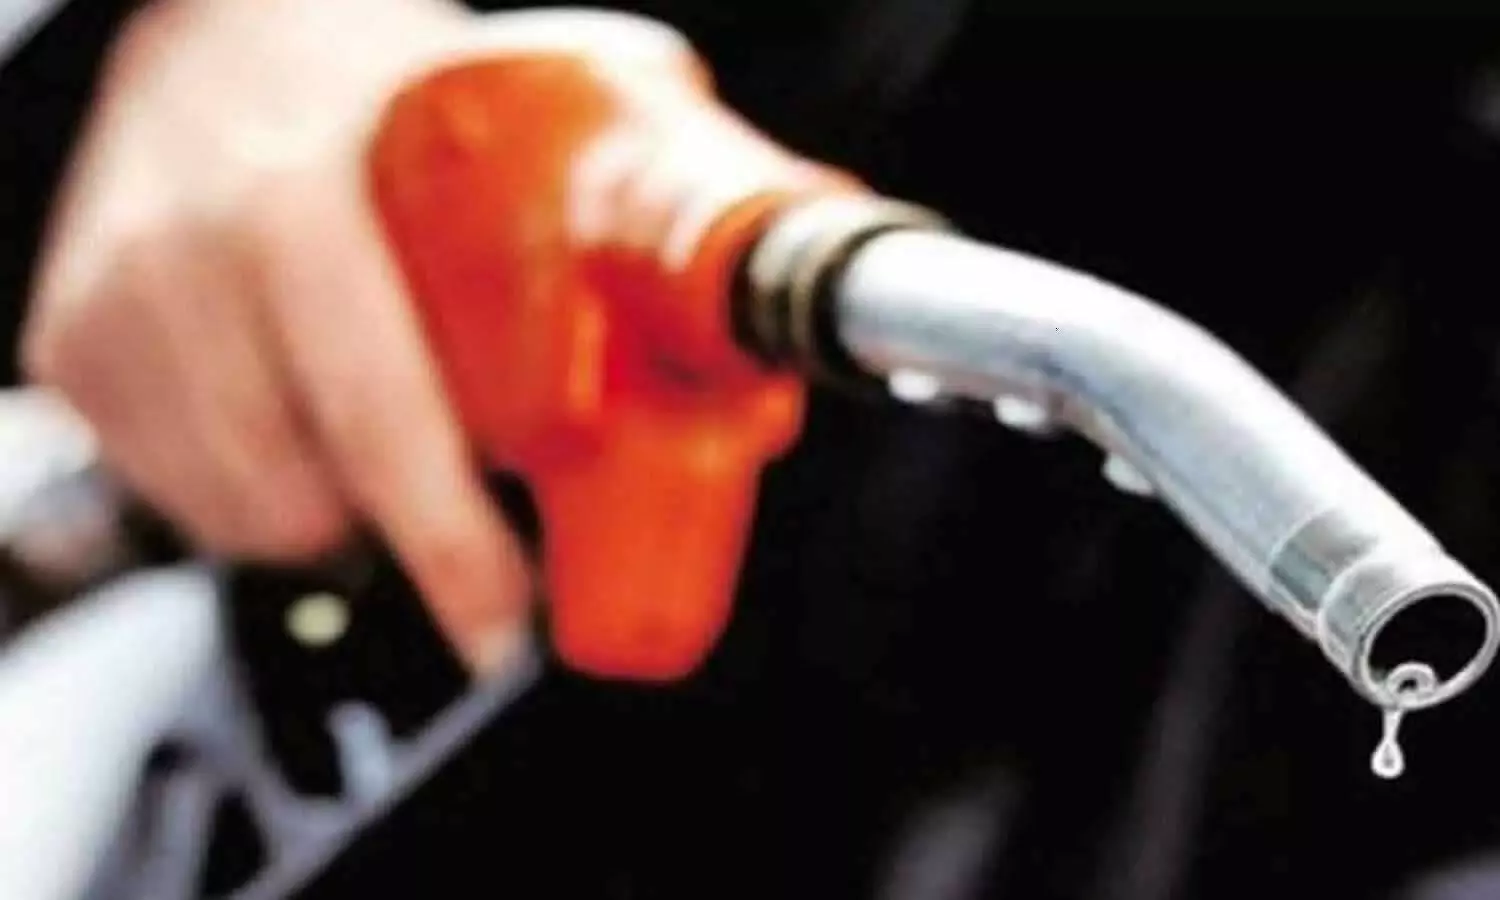 Petrol-Diesel Aaj ka Rate : साल 2021 के आखिरी दिन भी नहीं बढ़ी पेट्रोल-डीजल की कीमतें, यहां देखें नई प्राइस लिस्ट